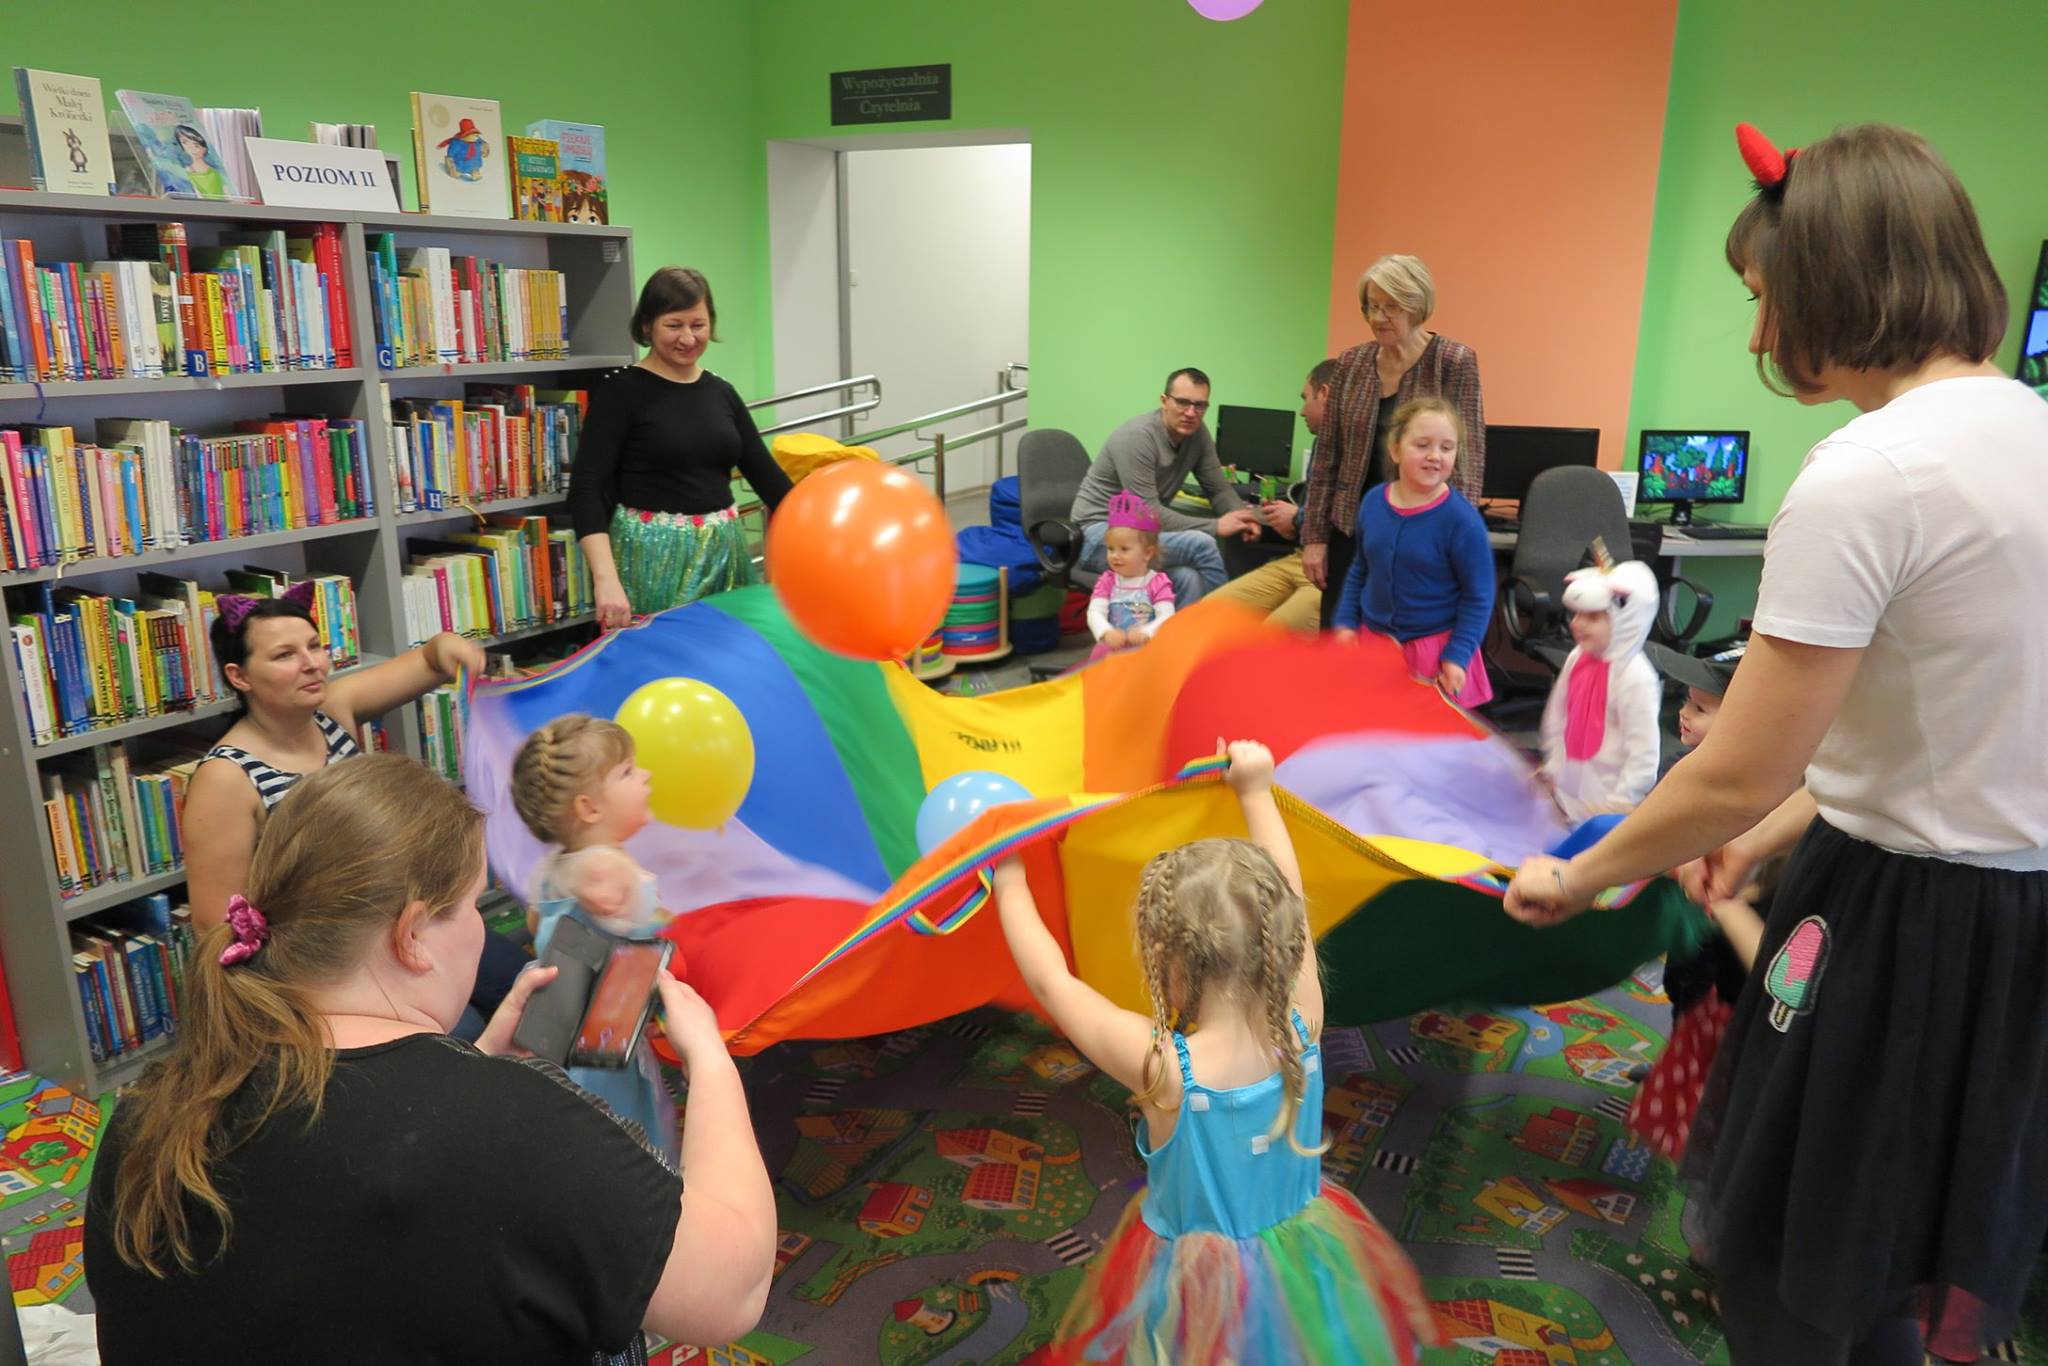 Wnętrze biblioteki. Dzieci wraz  z opiekunami bawią się kolorową chustą na której są kolorowe balony. 